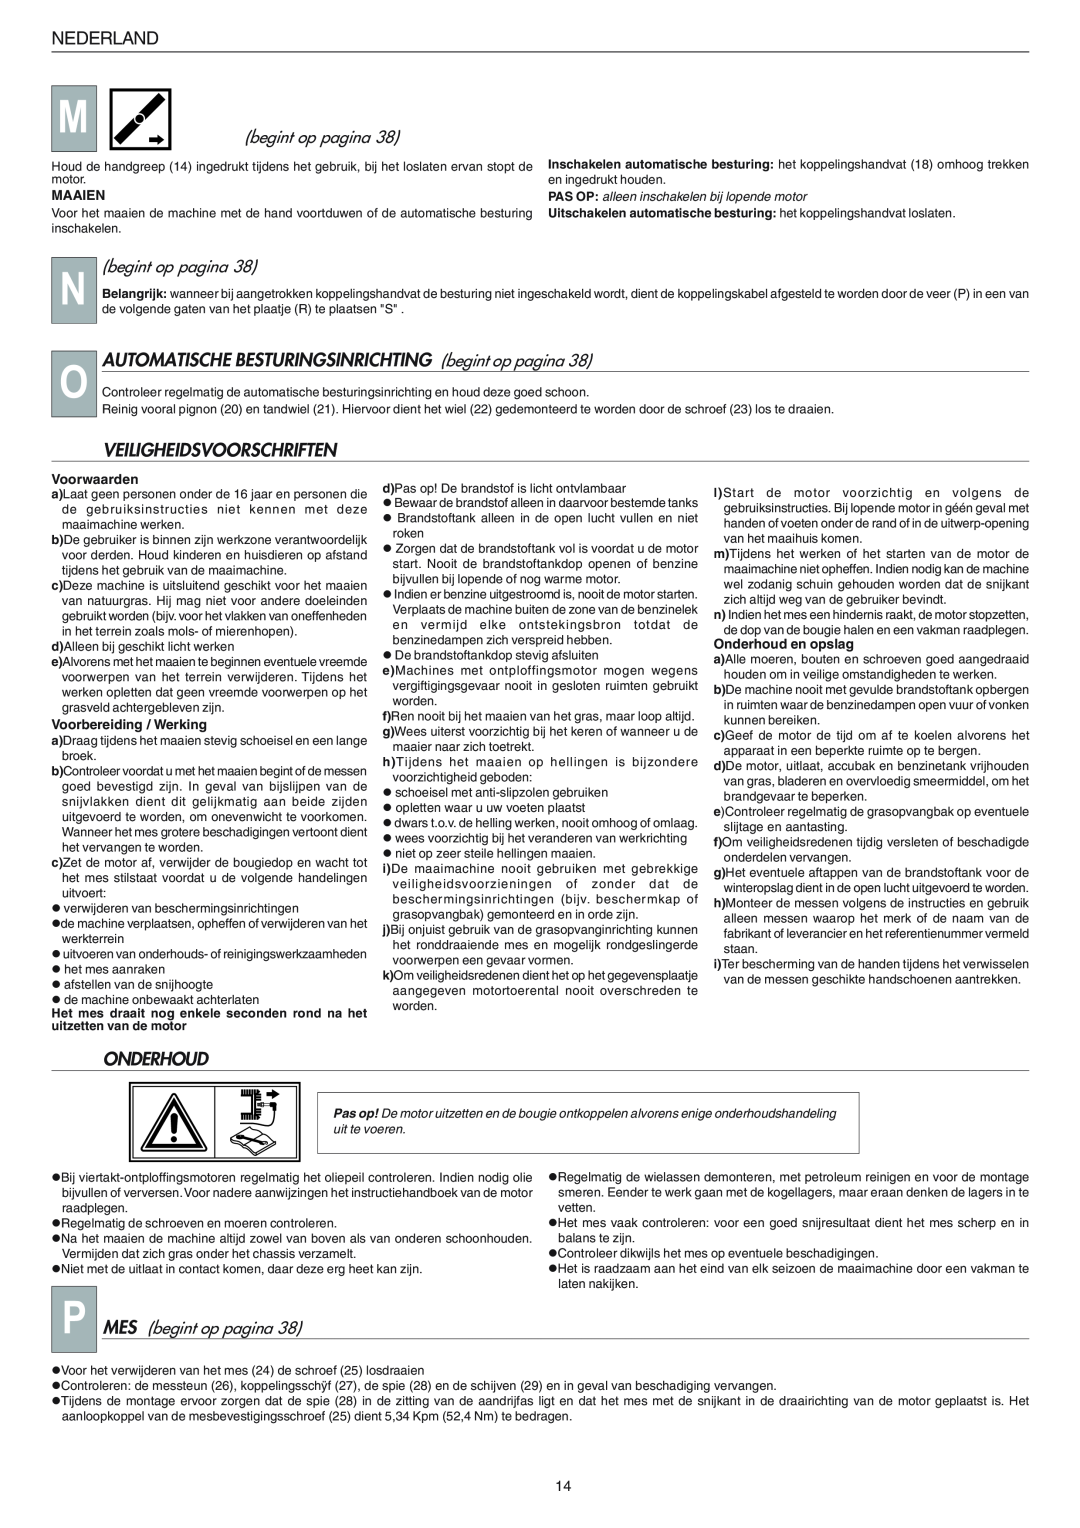 Husqvarna R 148 S manual Veiligheidsvoorschriften, Onderhoud, Nederland, P MES begint op pagina, Maaien, Voorwaarden 